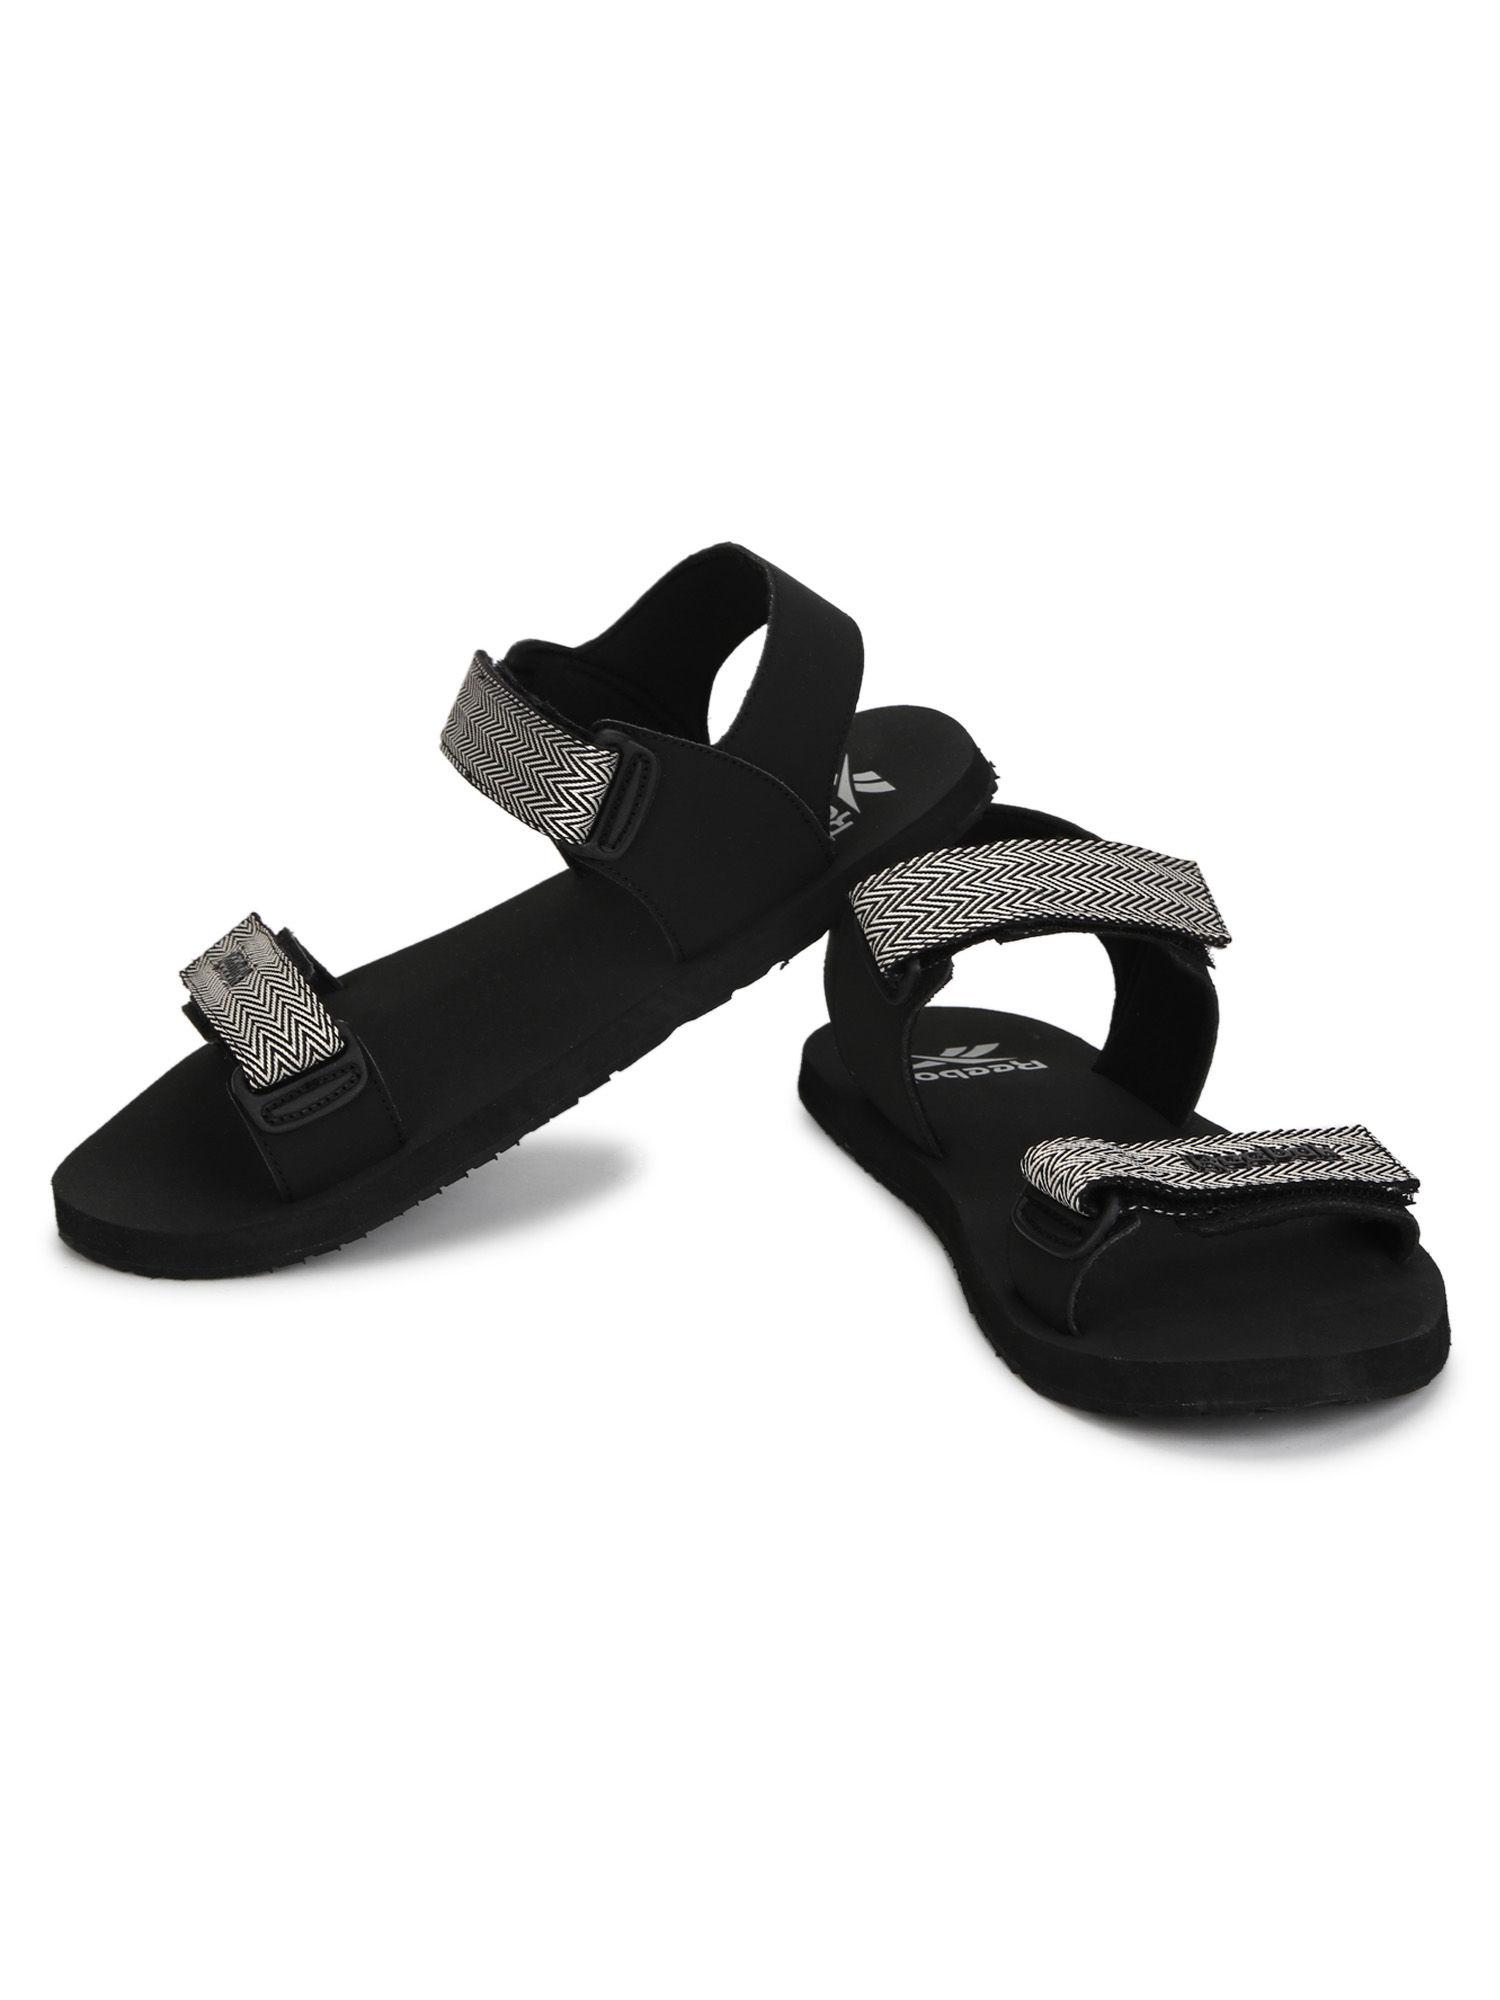 vm-max-pro-black-swim-sandal